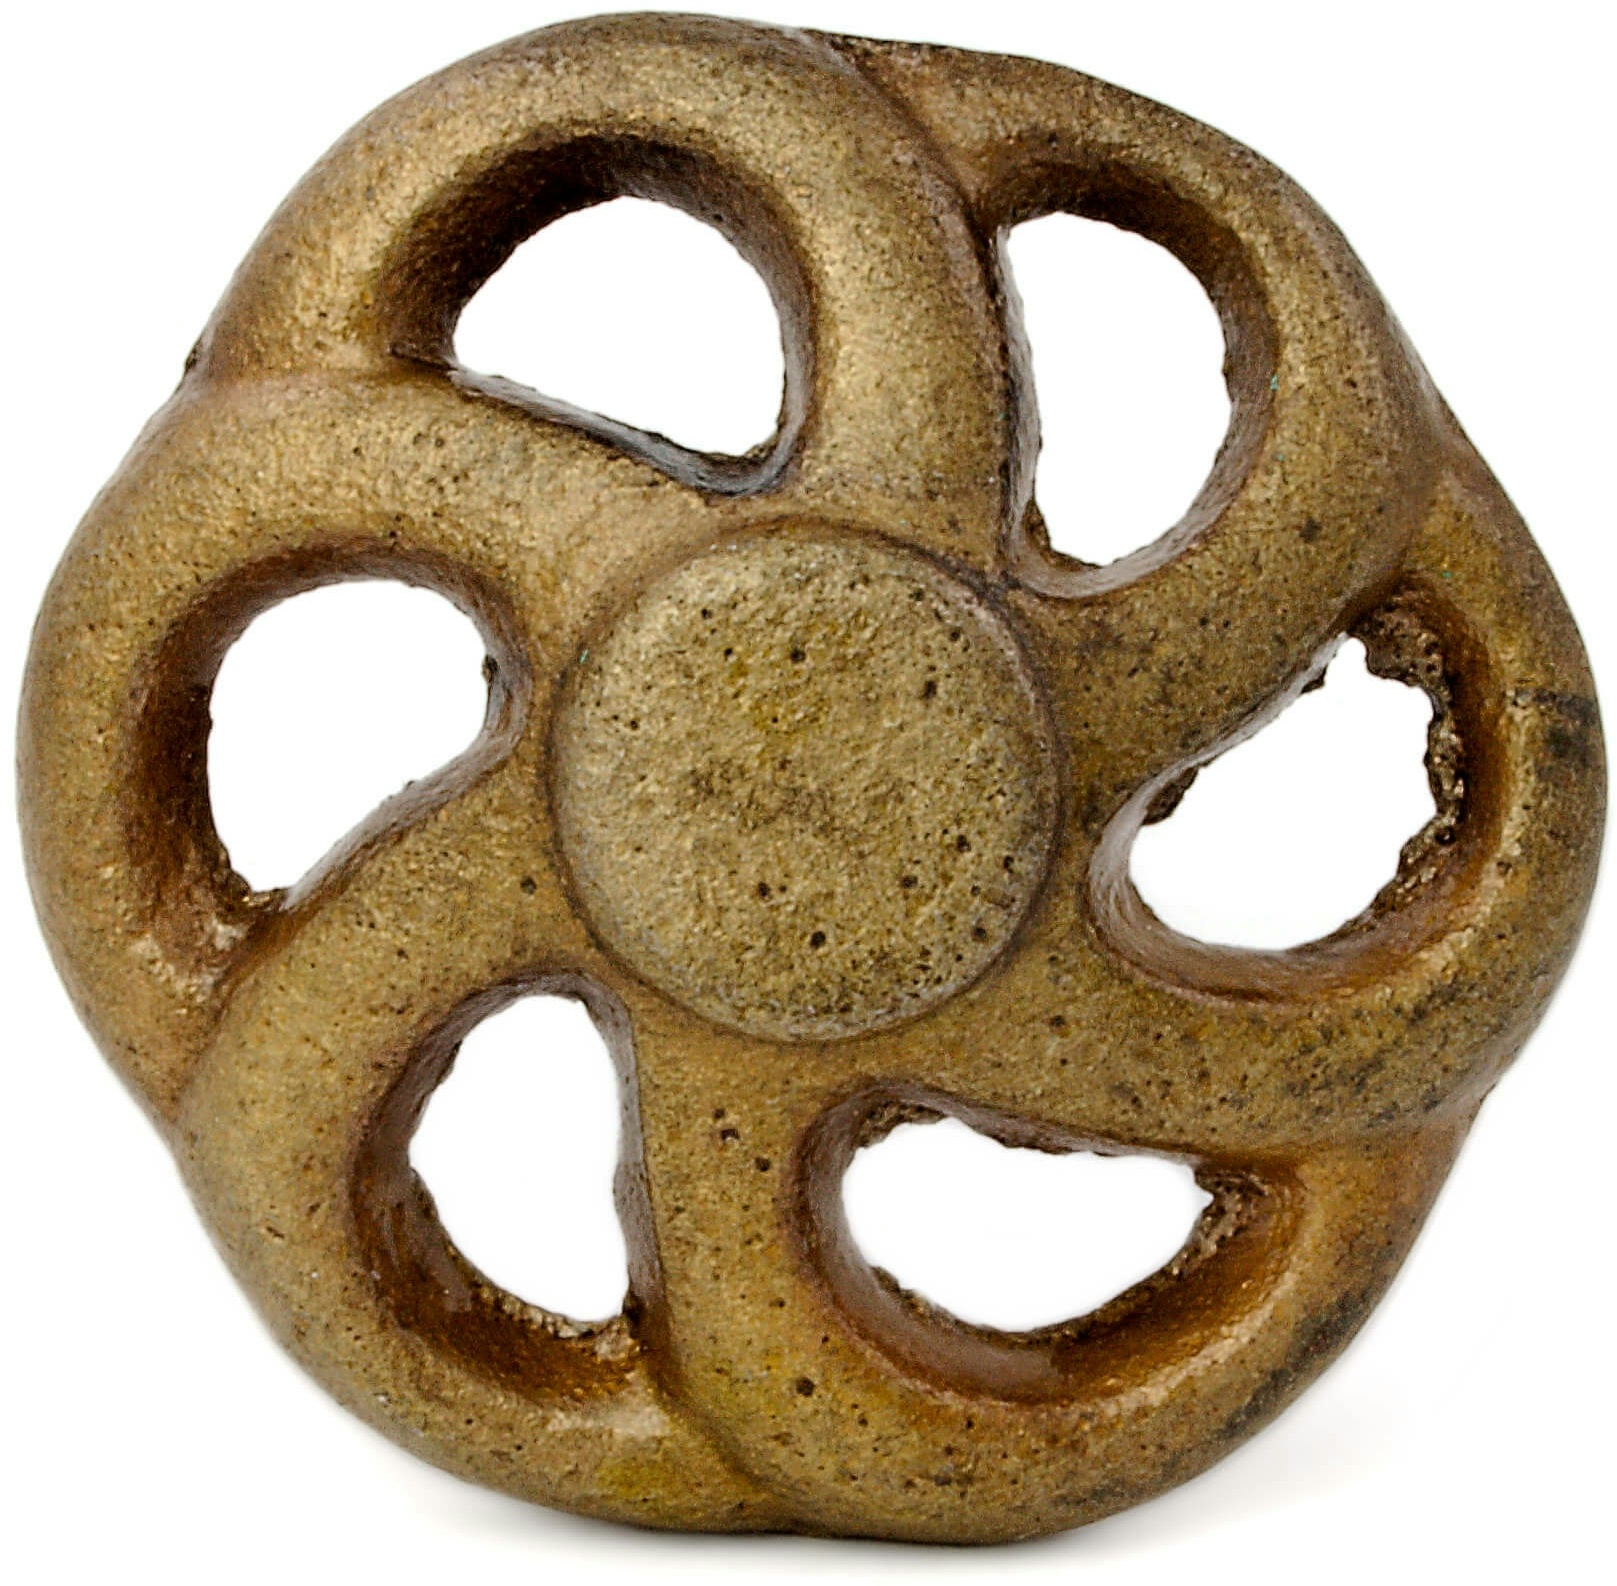 Knauf Eisen in der Form eines Rades in braun